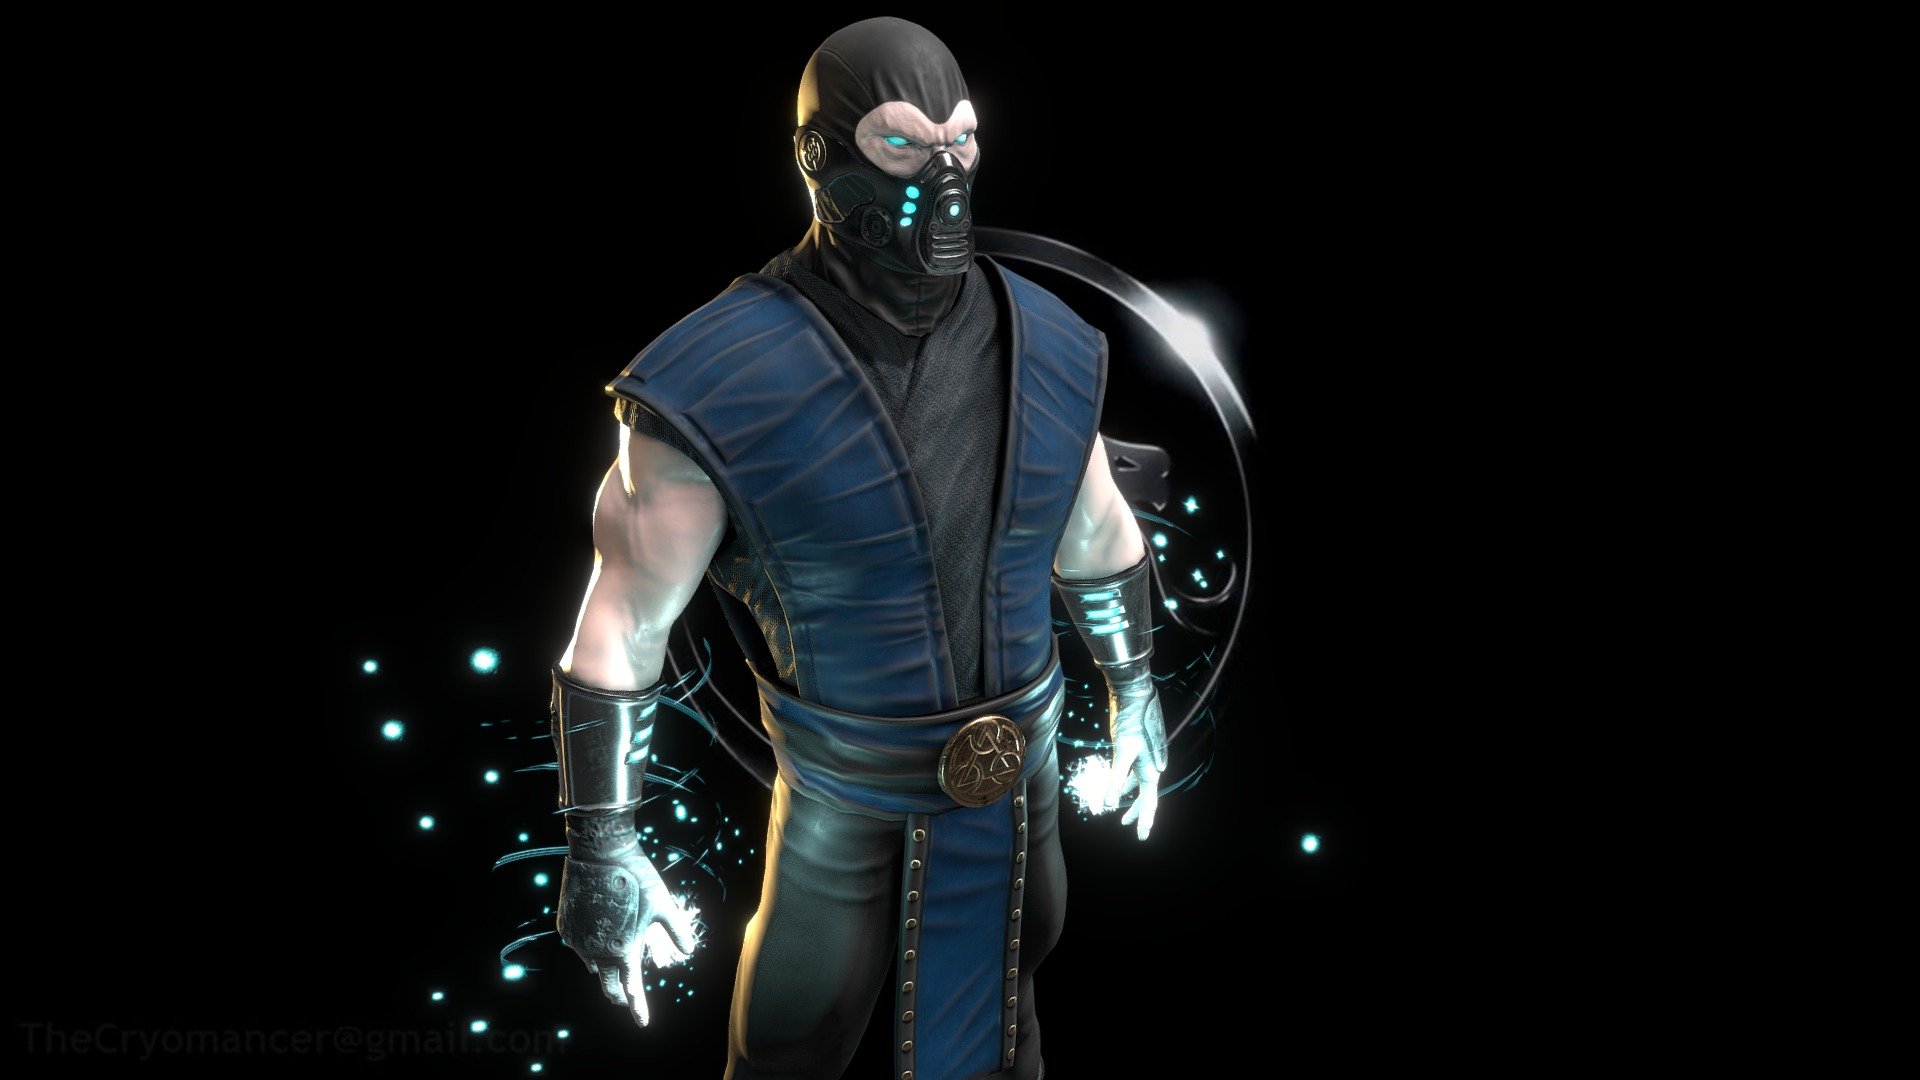 Mortal Kombat fan art: Sub-Zero by Gianluigi Ferrantino - Sub-Zero - 3D model by AIV 3d model